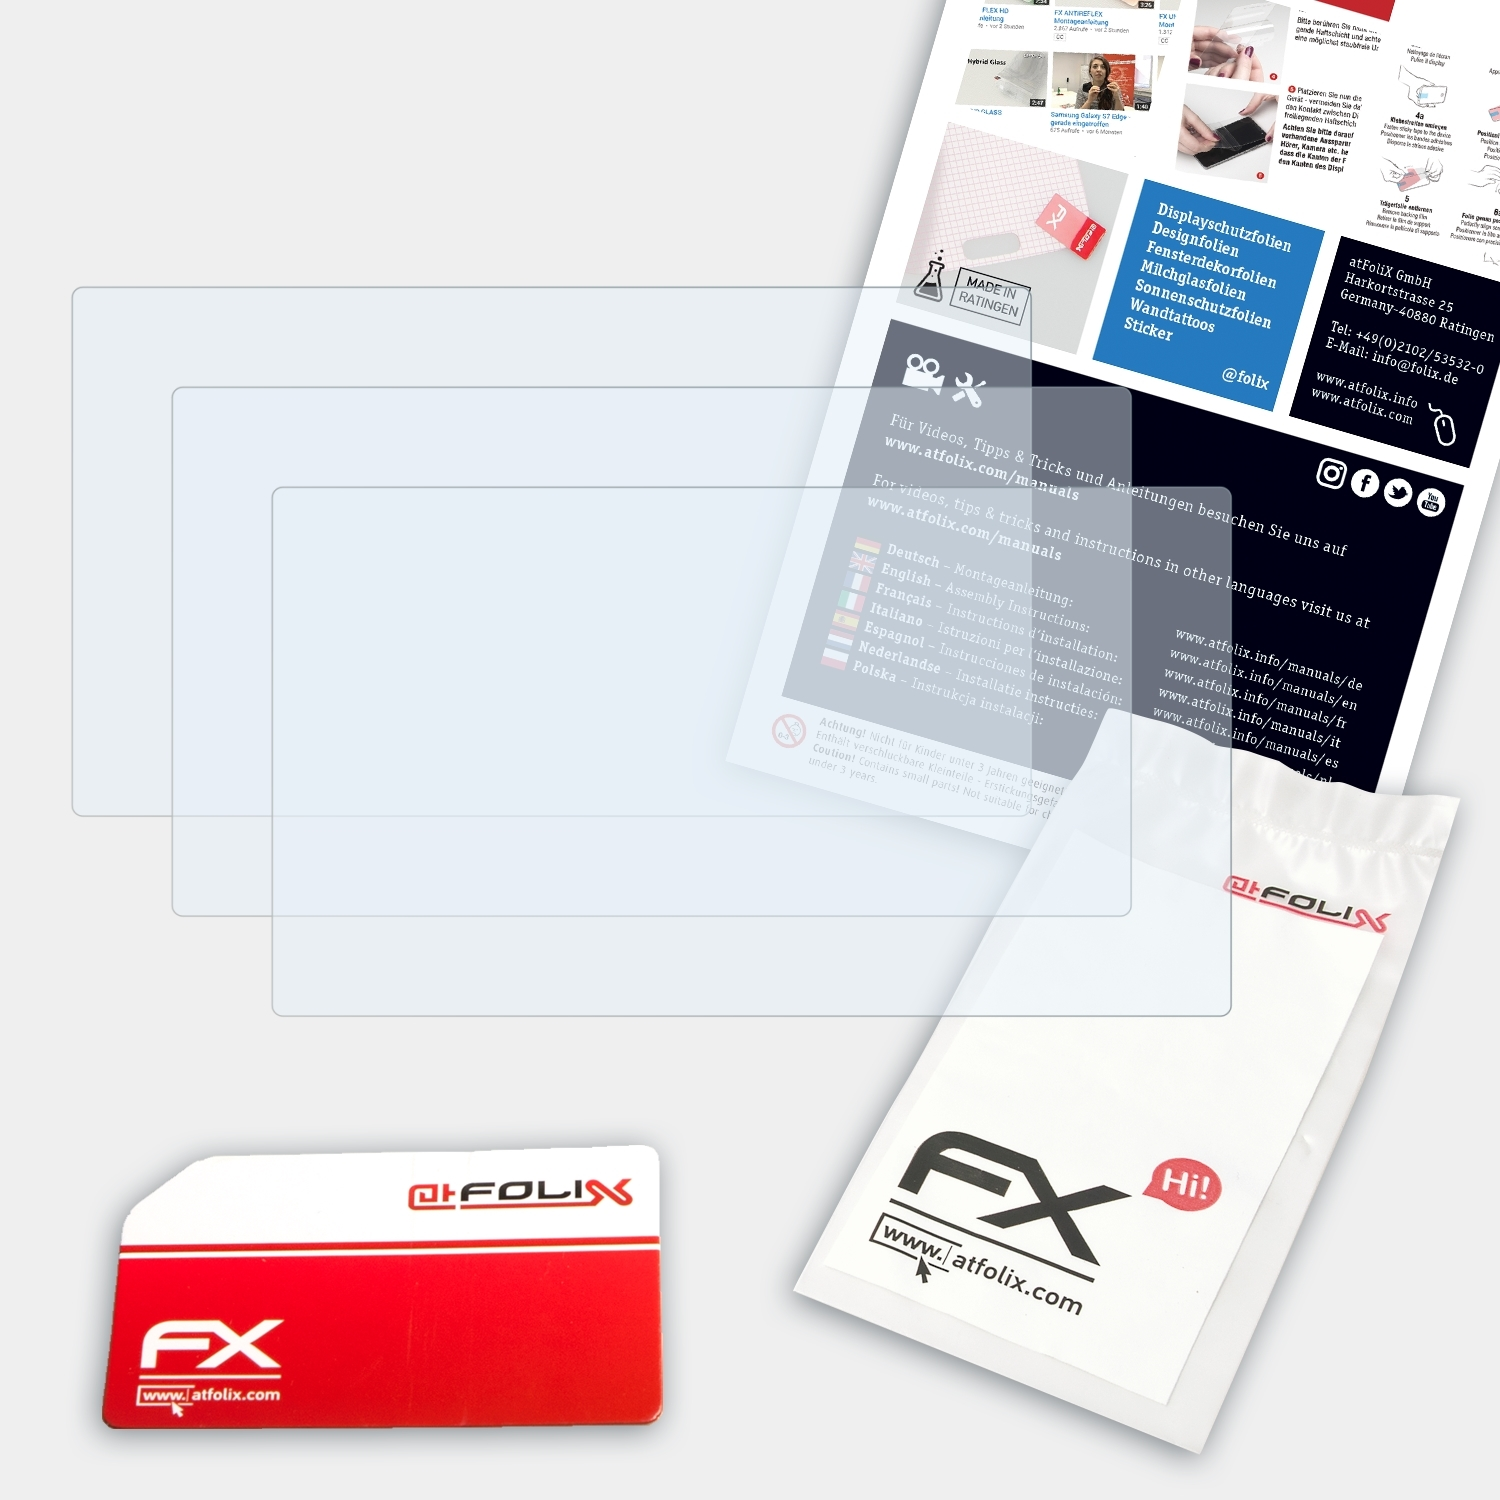 ATFOLIX 3x FX-Clear Pioneer Displayschutz(für DJS-1000)